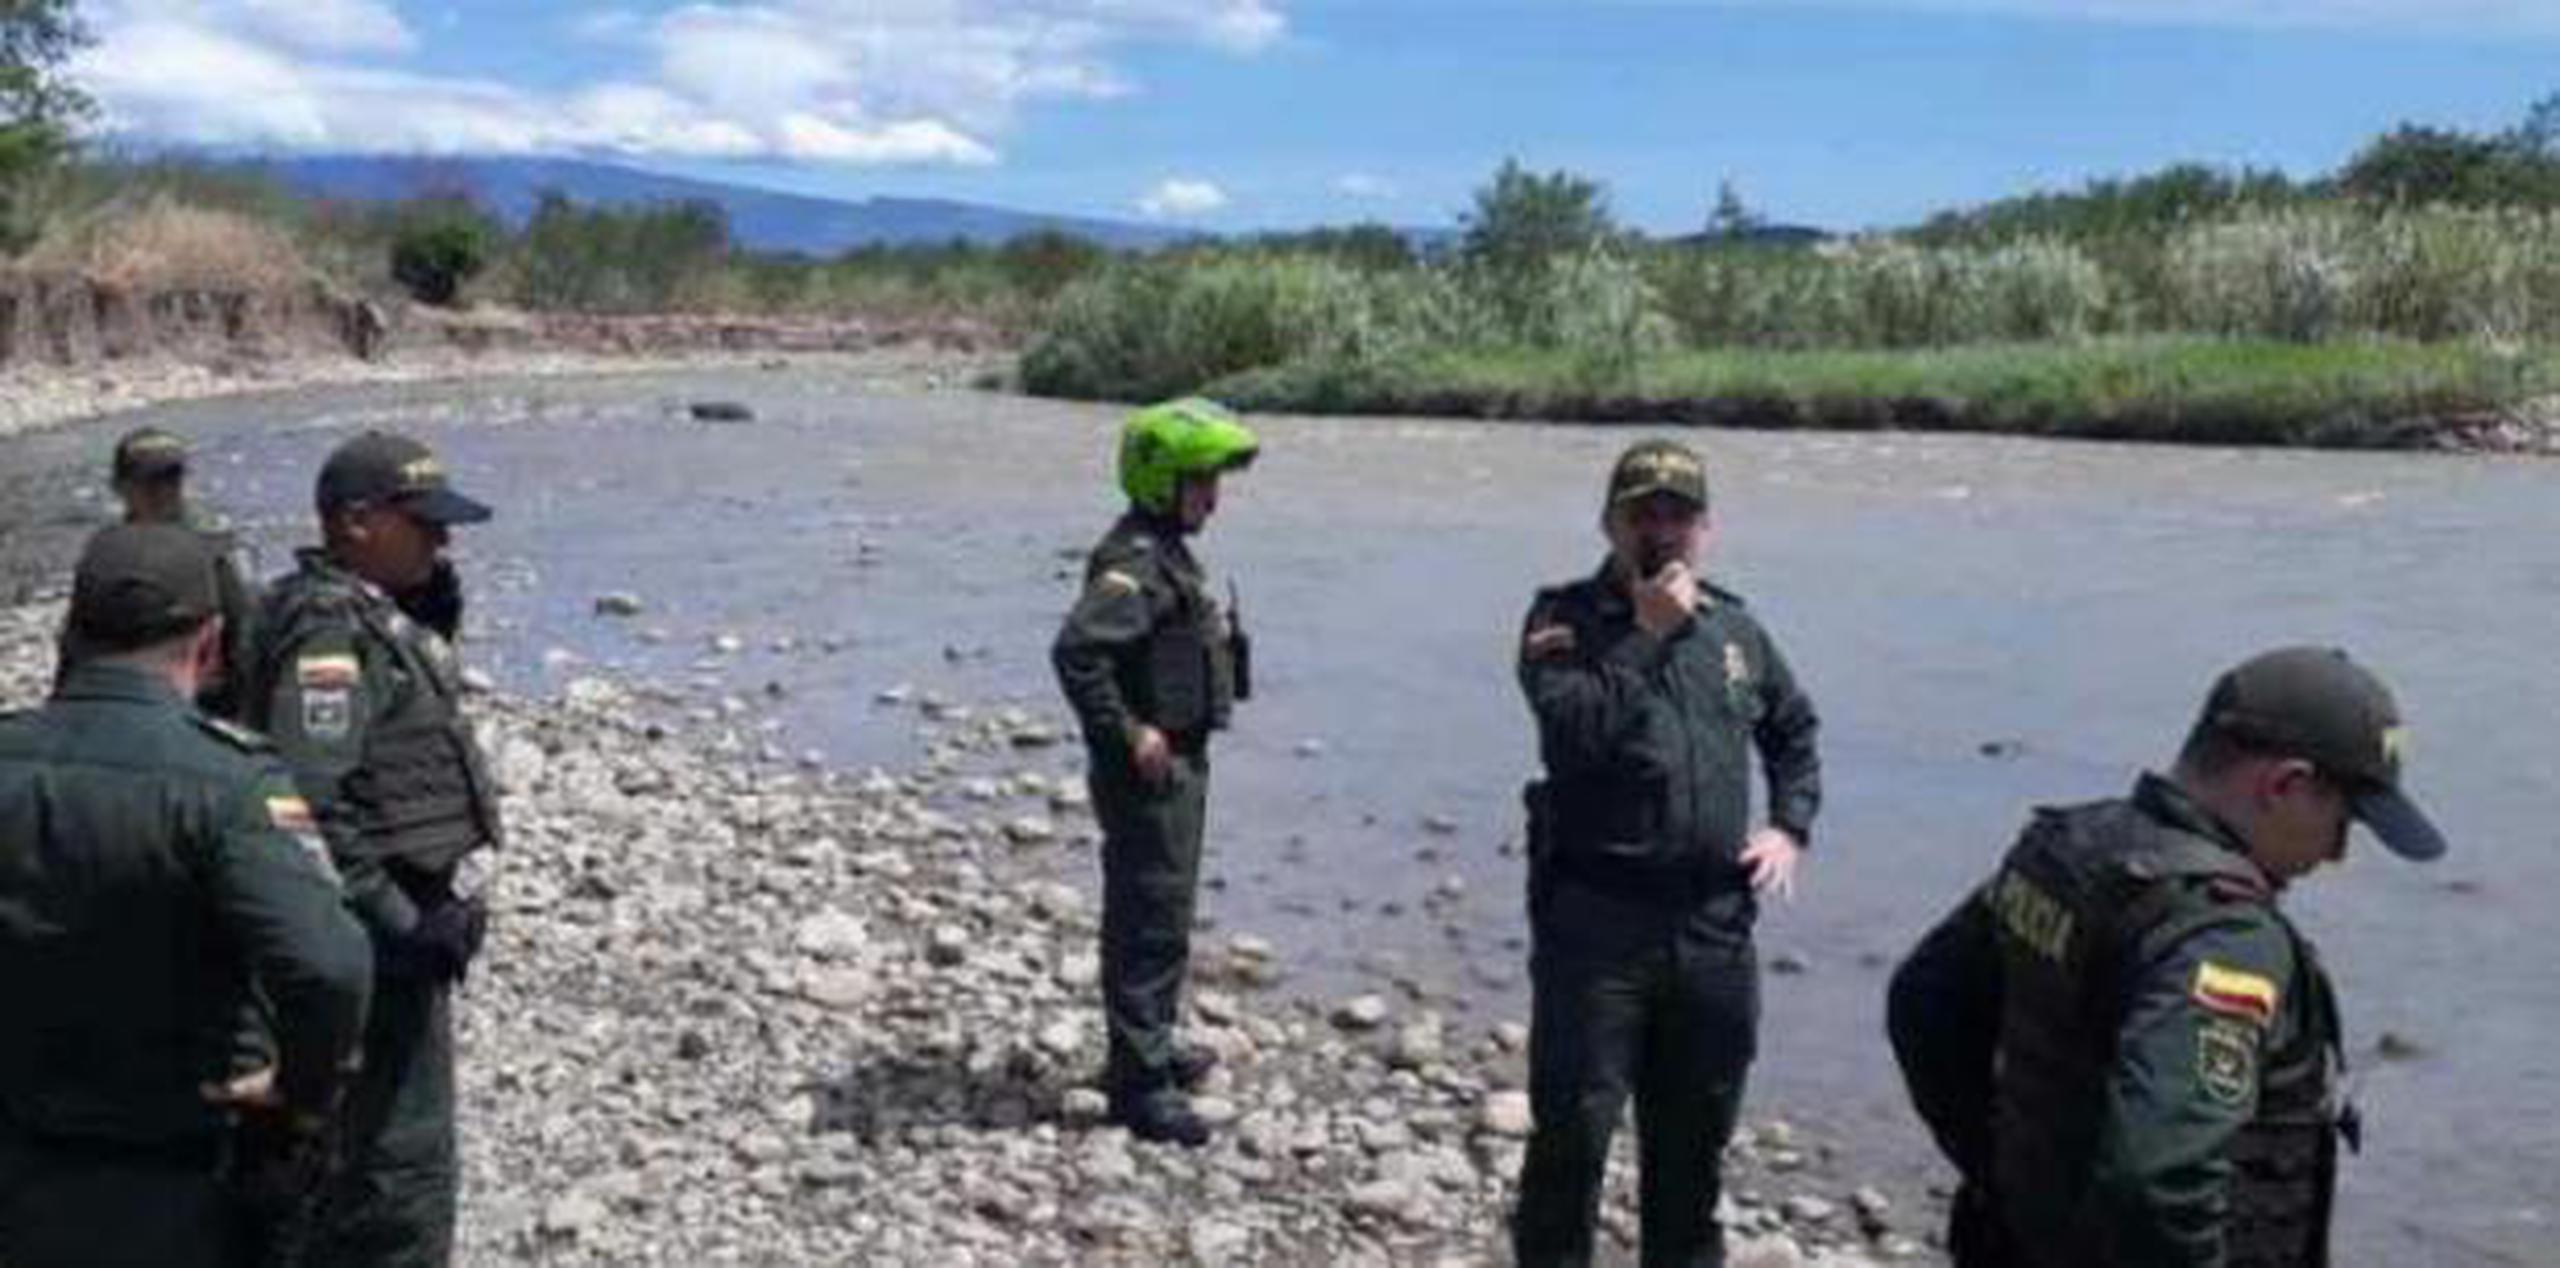 La detención fue adelantada por unidades del Ejército de la nación petrolera en la ruta ilegal conocida como Portón Azul, al margen del río Táchira. (archivo)